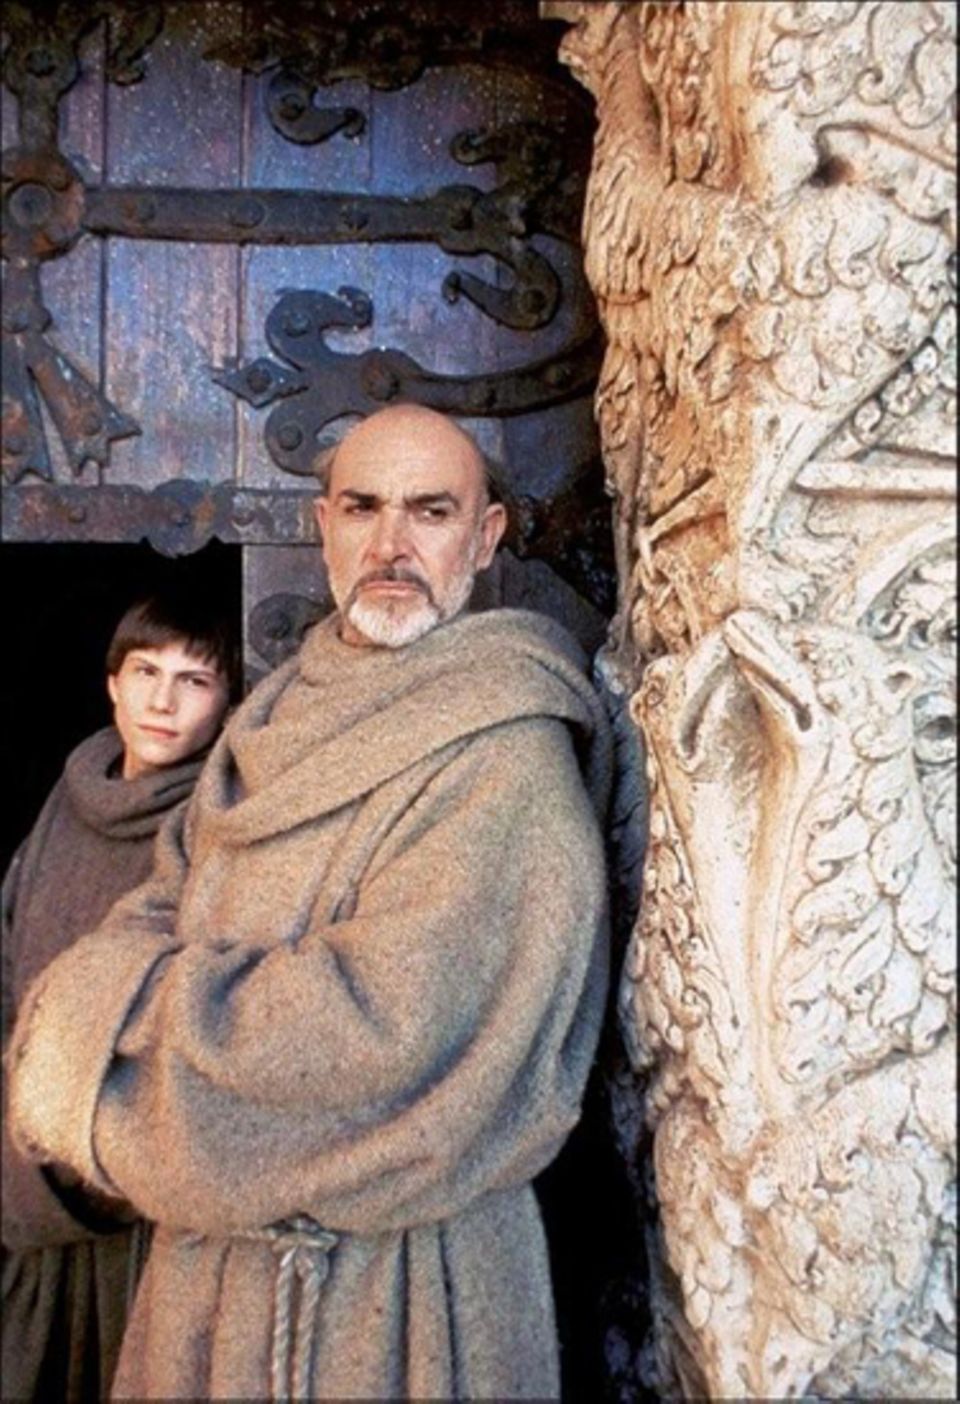 Connery war nicht die erste Wahl für die Rolle des Mönchs William von Baskerville in "Der Name der Rose" (1986).